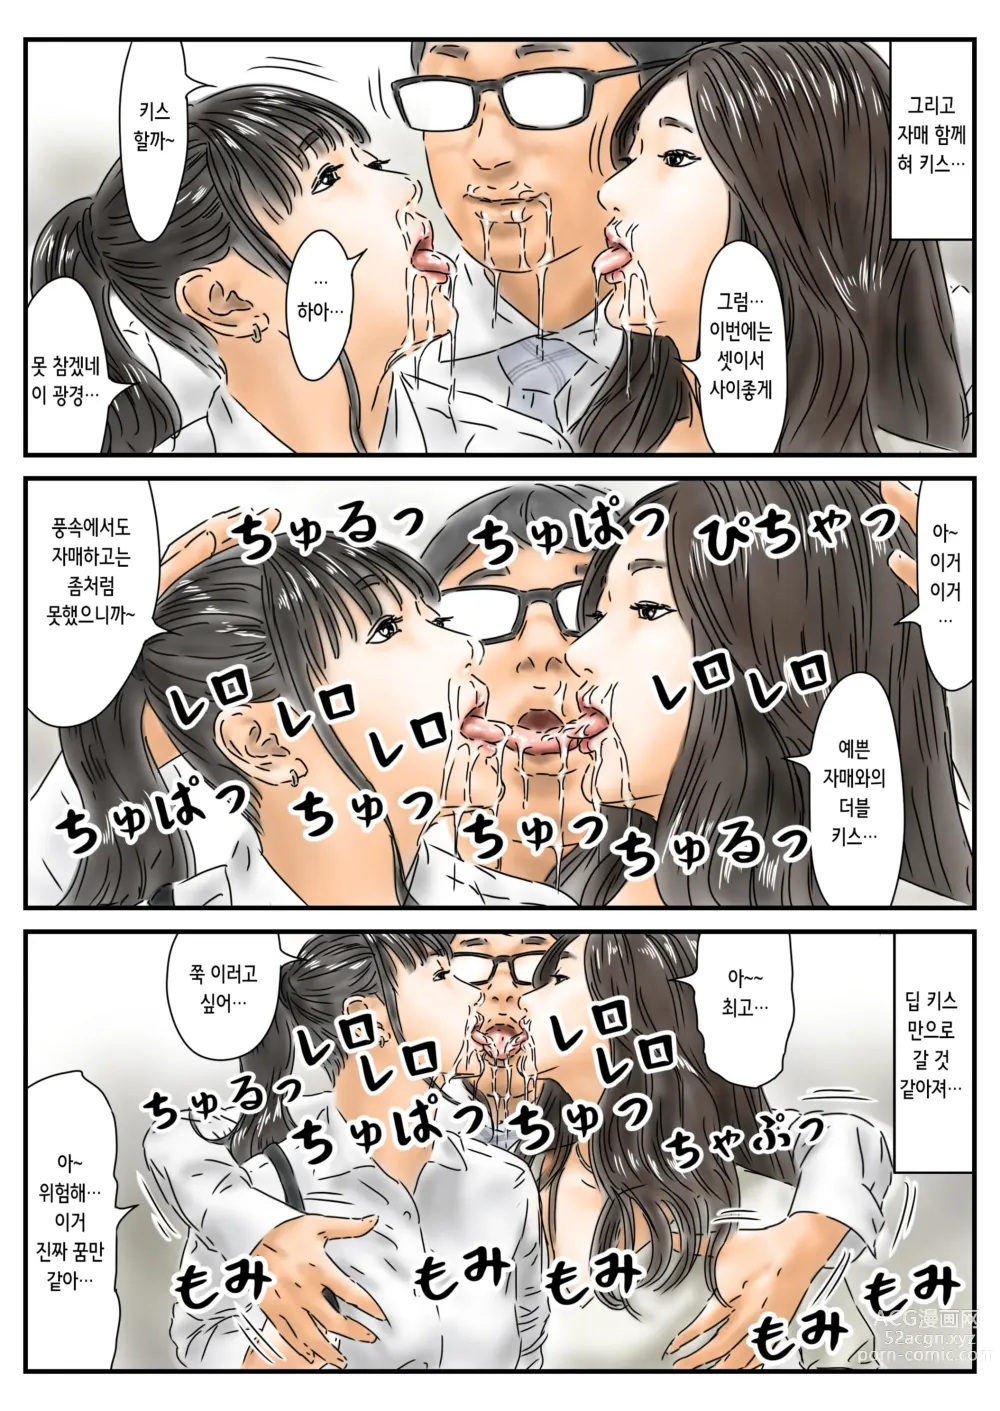 Page 11 of doujinshi 시간정지 예쁜 언니의 엉덩이에 욕정 해서 그 자리에서 해소했습니다